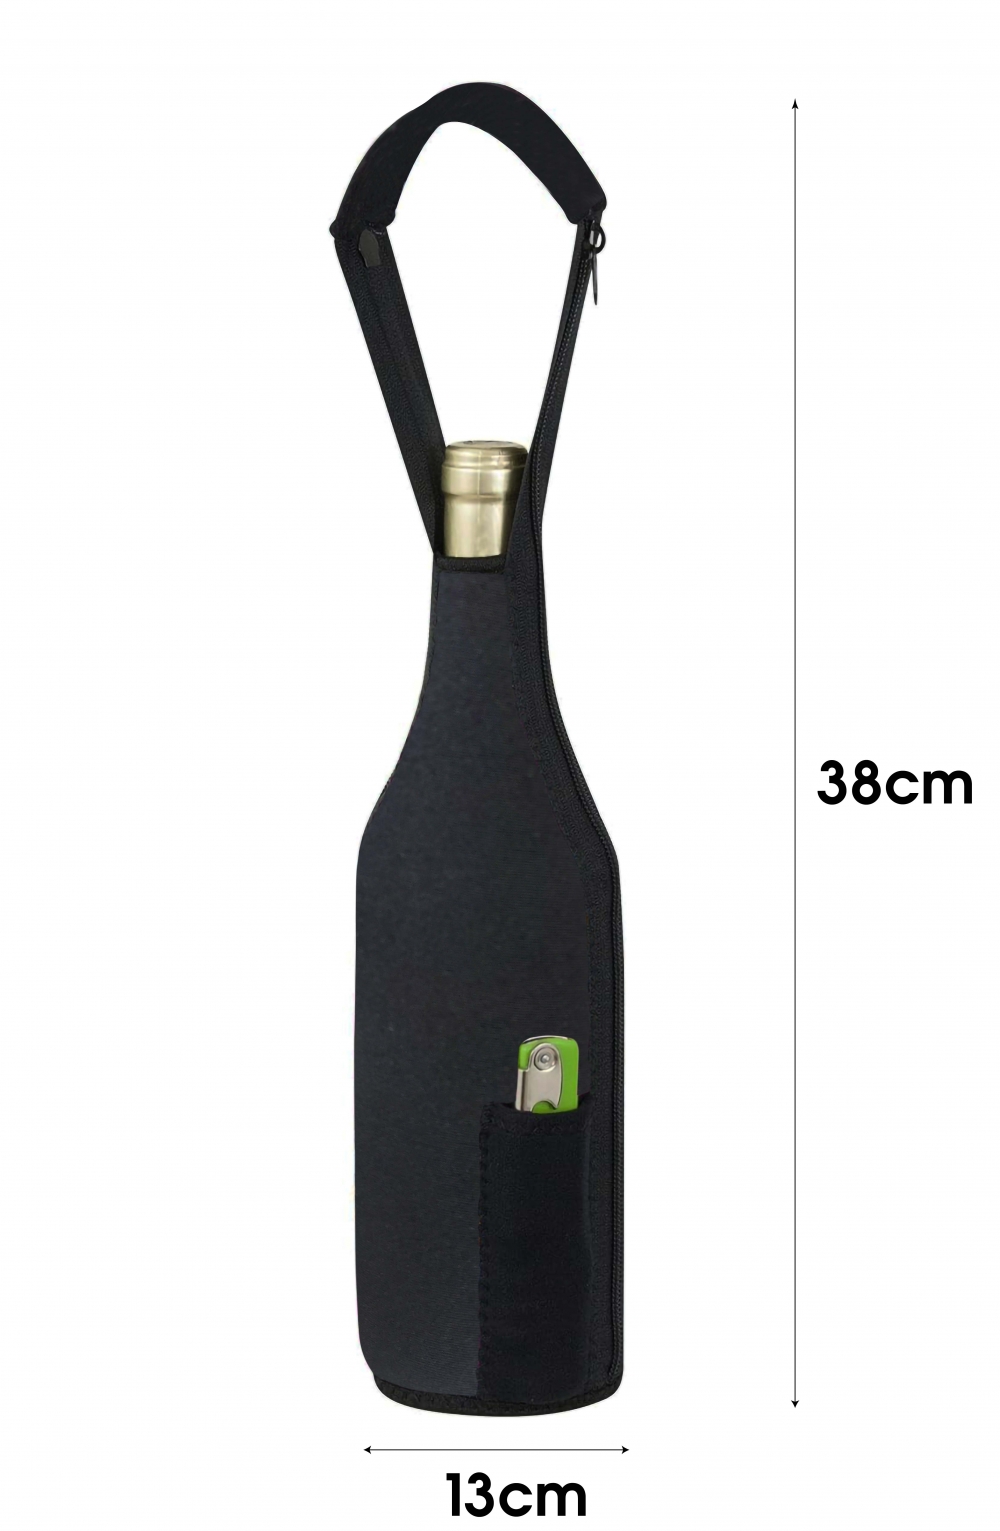 Hold vinen eller drikken din kald på tur. Den har en praktisk lomme til vinåpner og bærehåndtak. Leveres med fullt digitaltrykk ved bestilling av 100 stk.